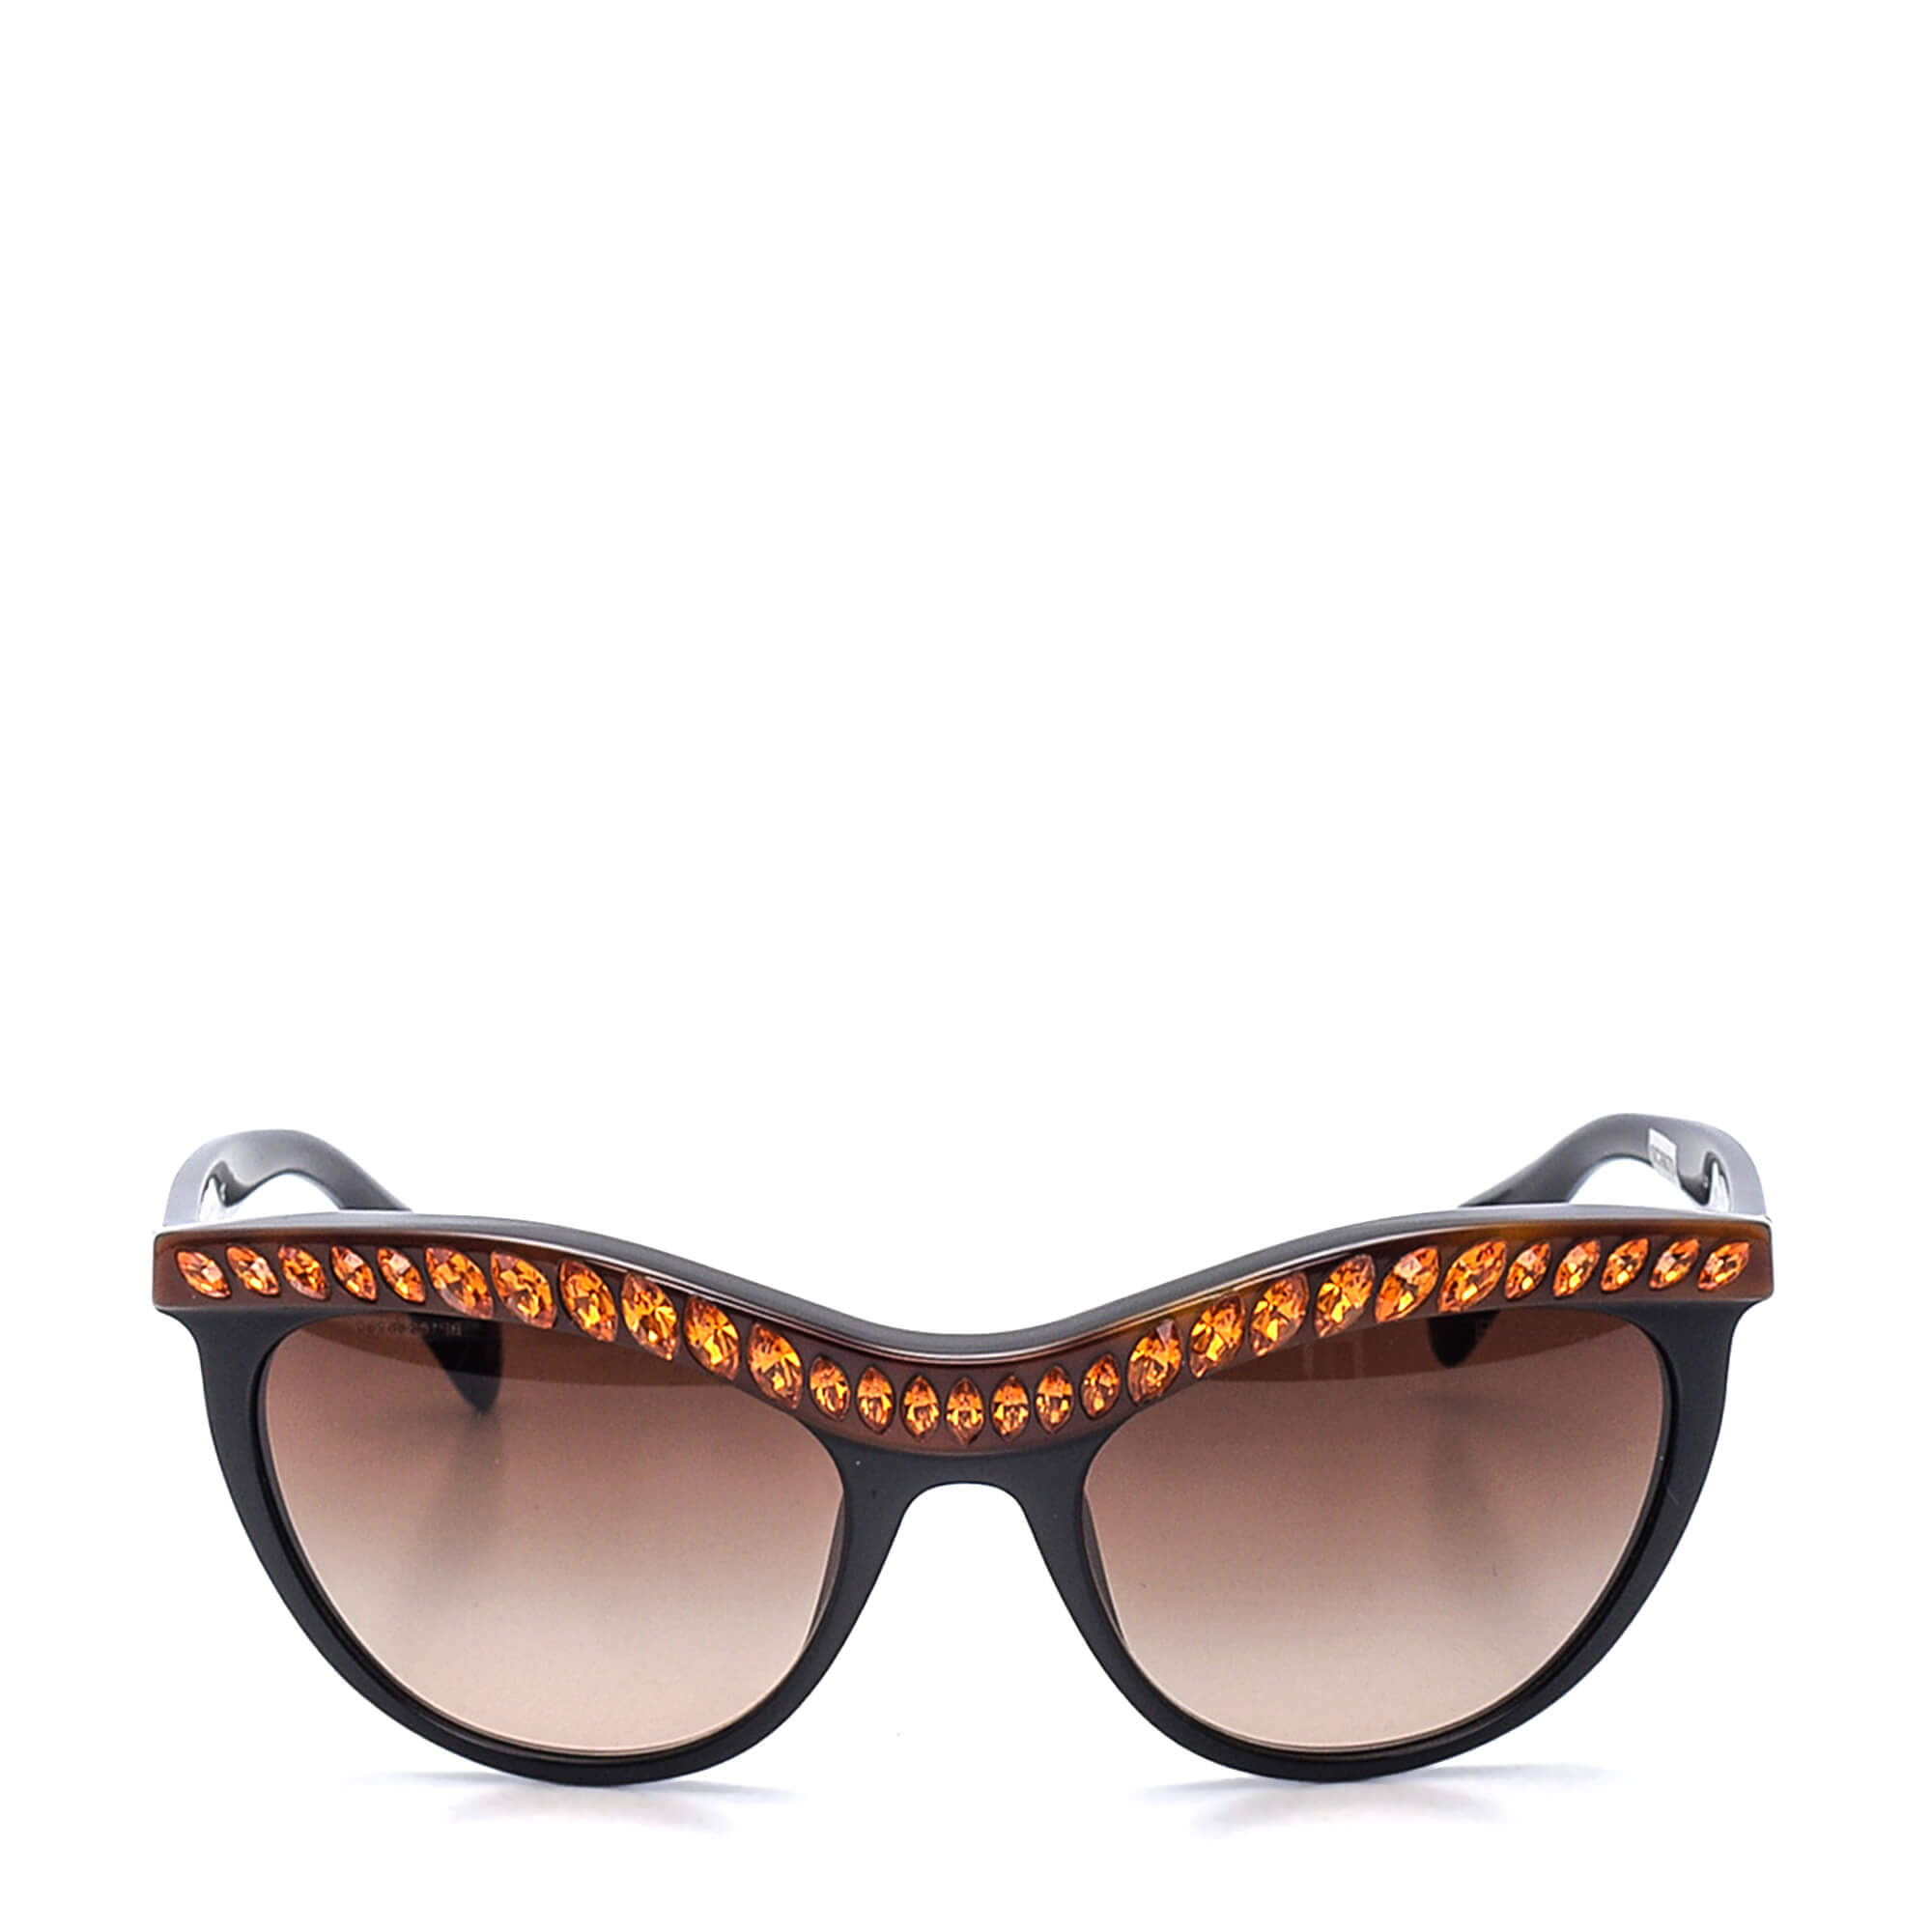 Prada - Black/Orange Strass Sunglasses